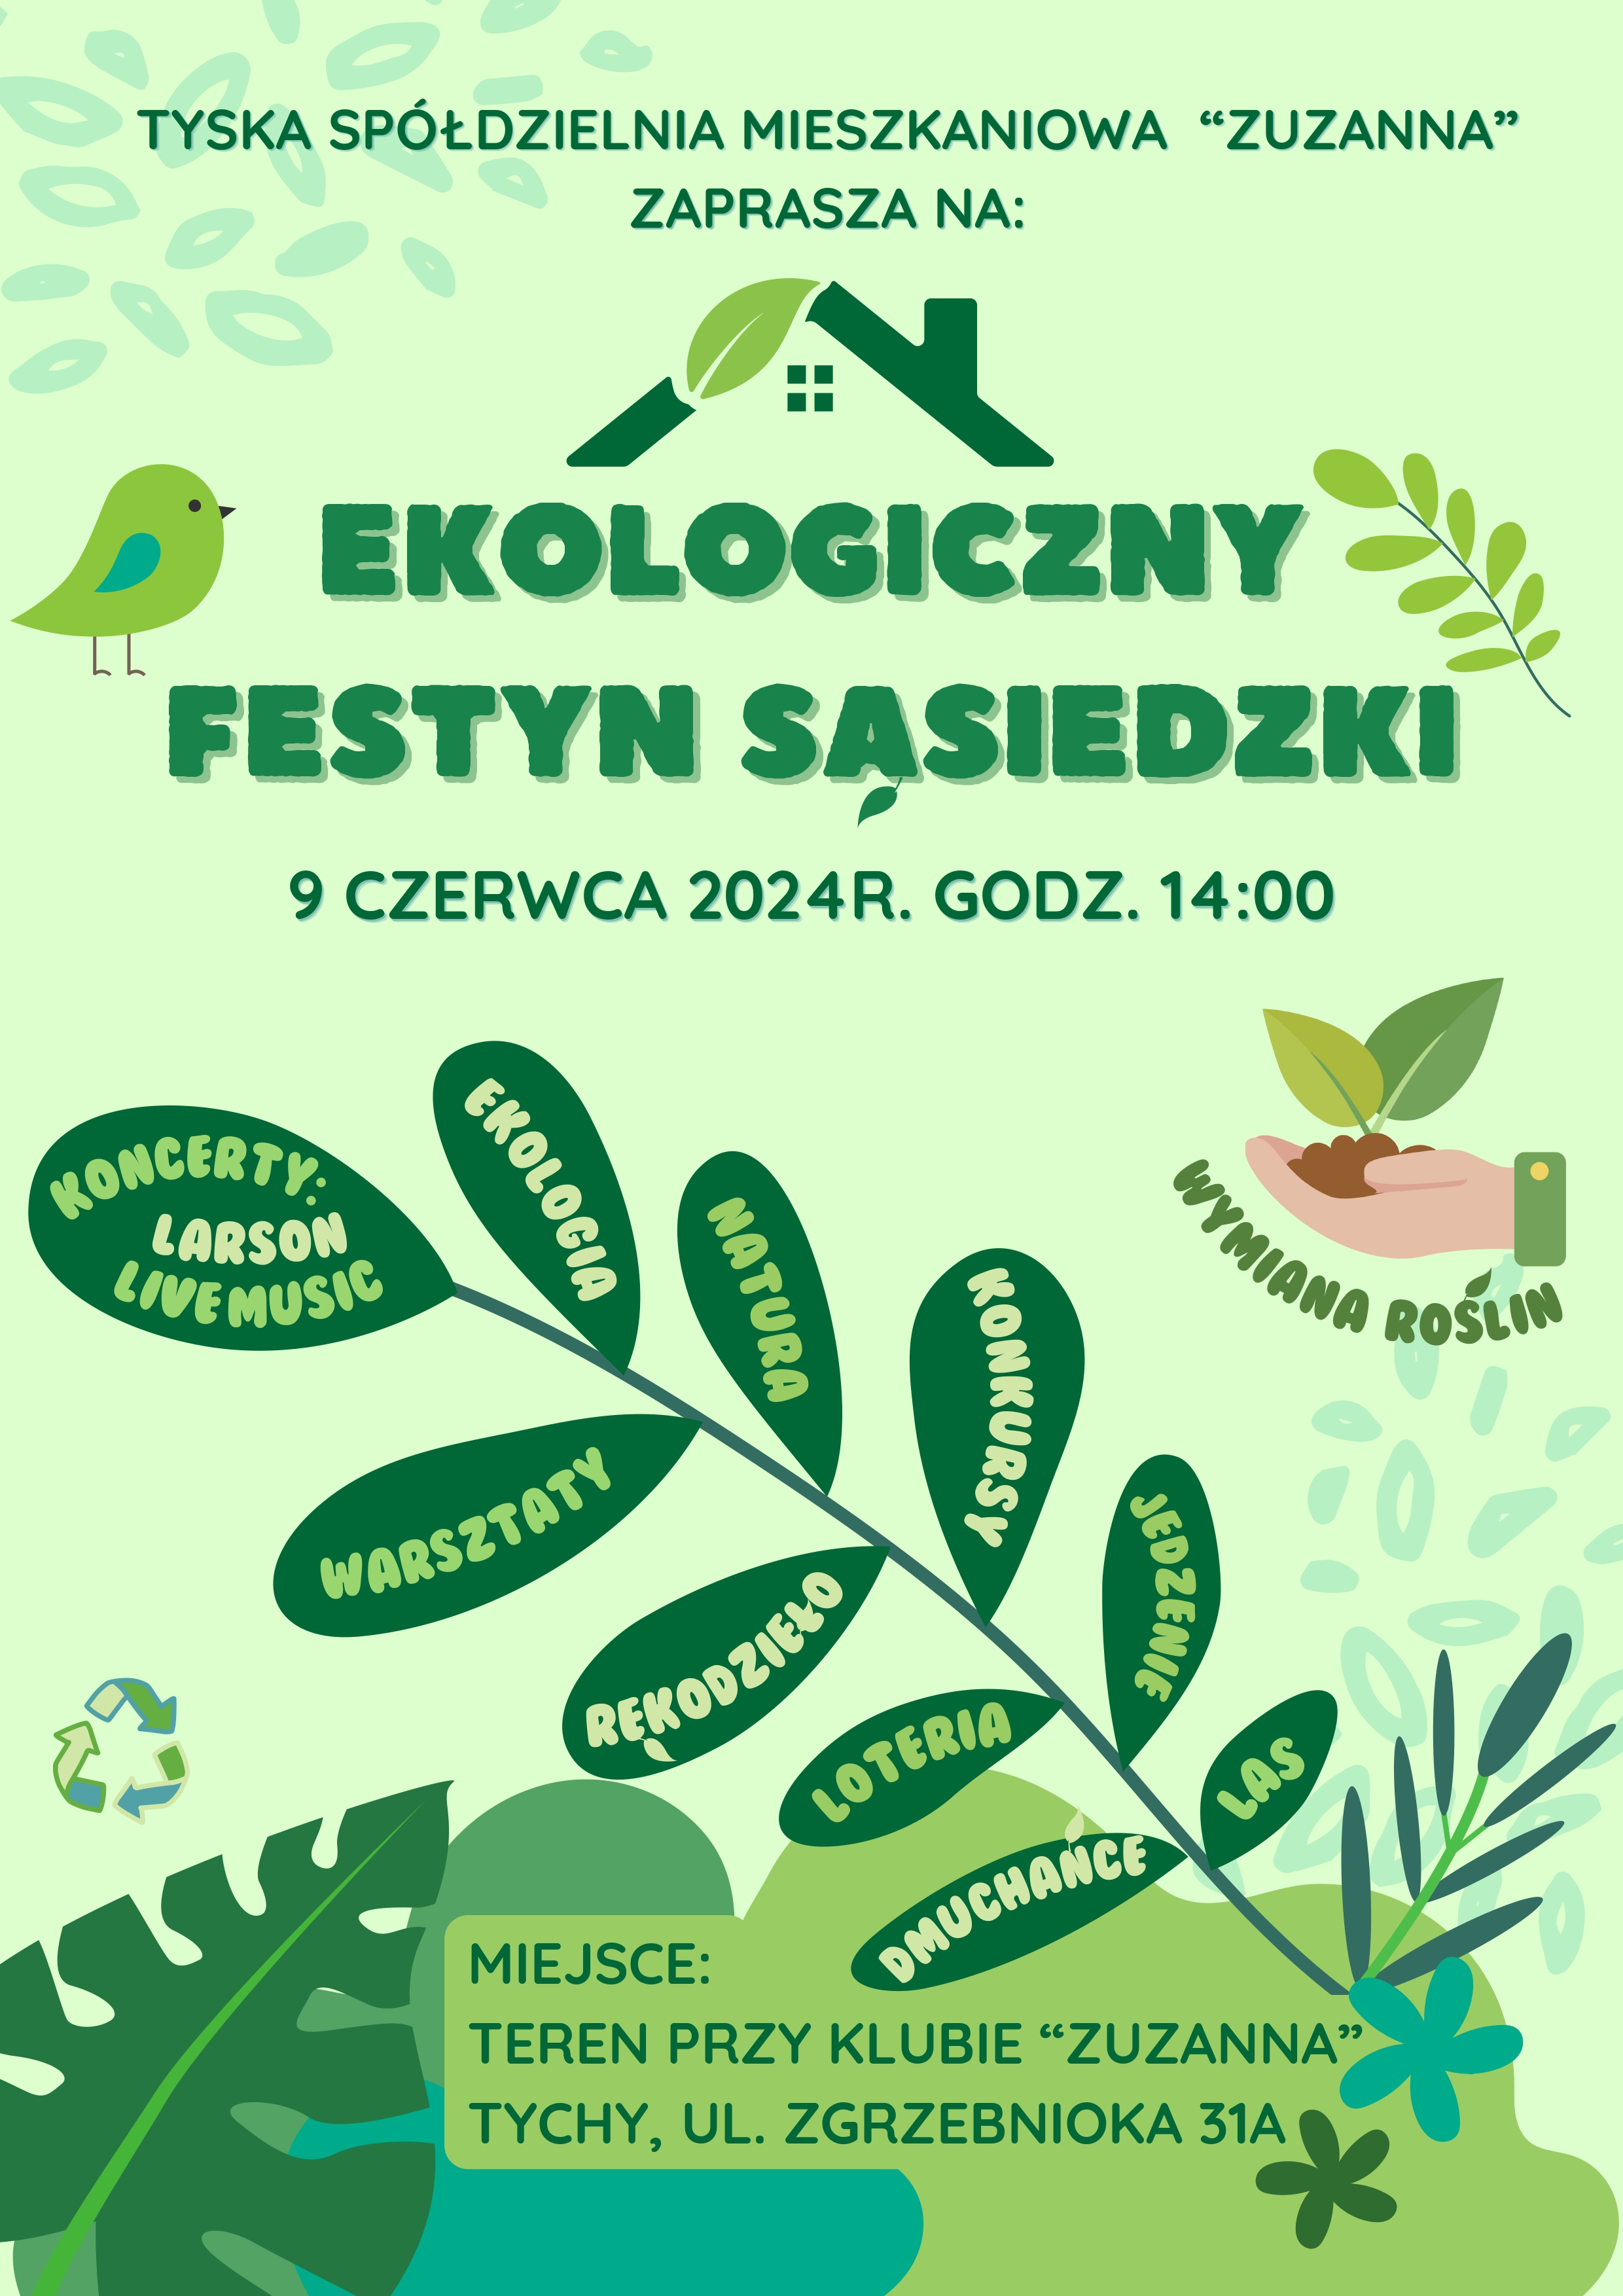 Plakat Ekologiczny Festyn sąsiedzki 09.06.2024r. 1 page 0001